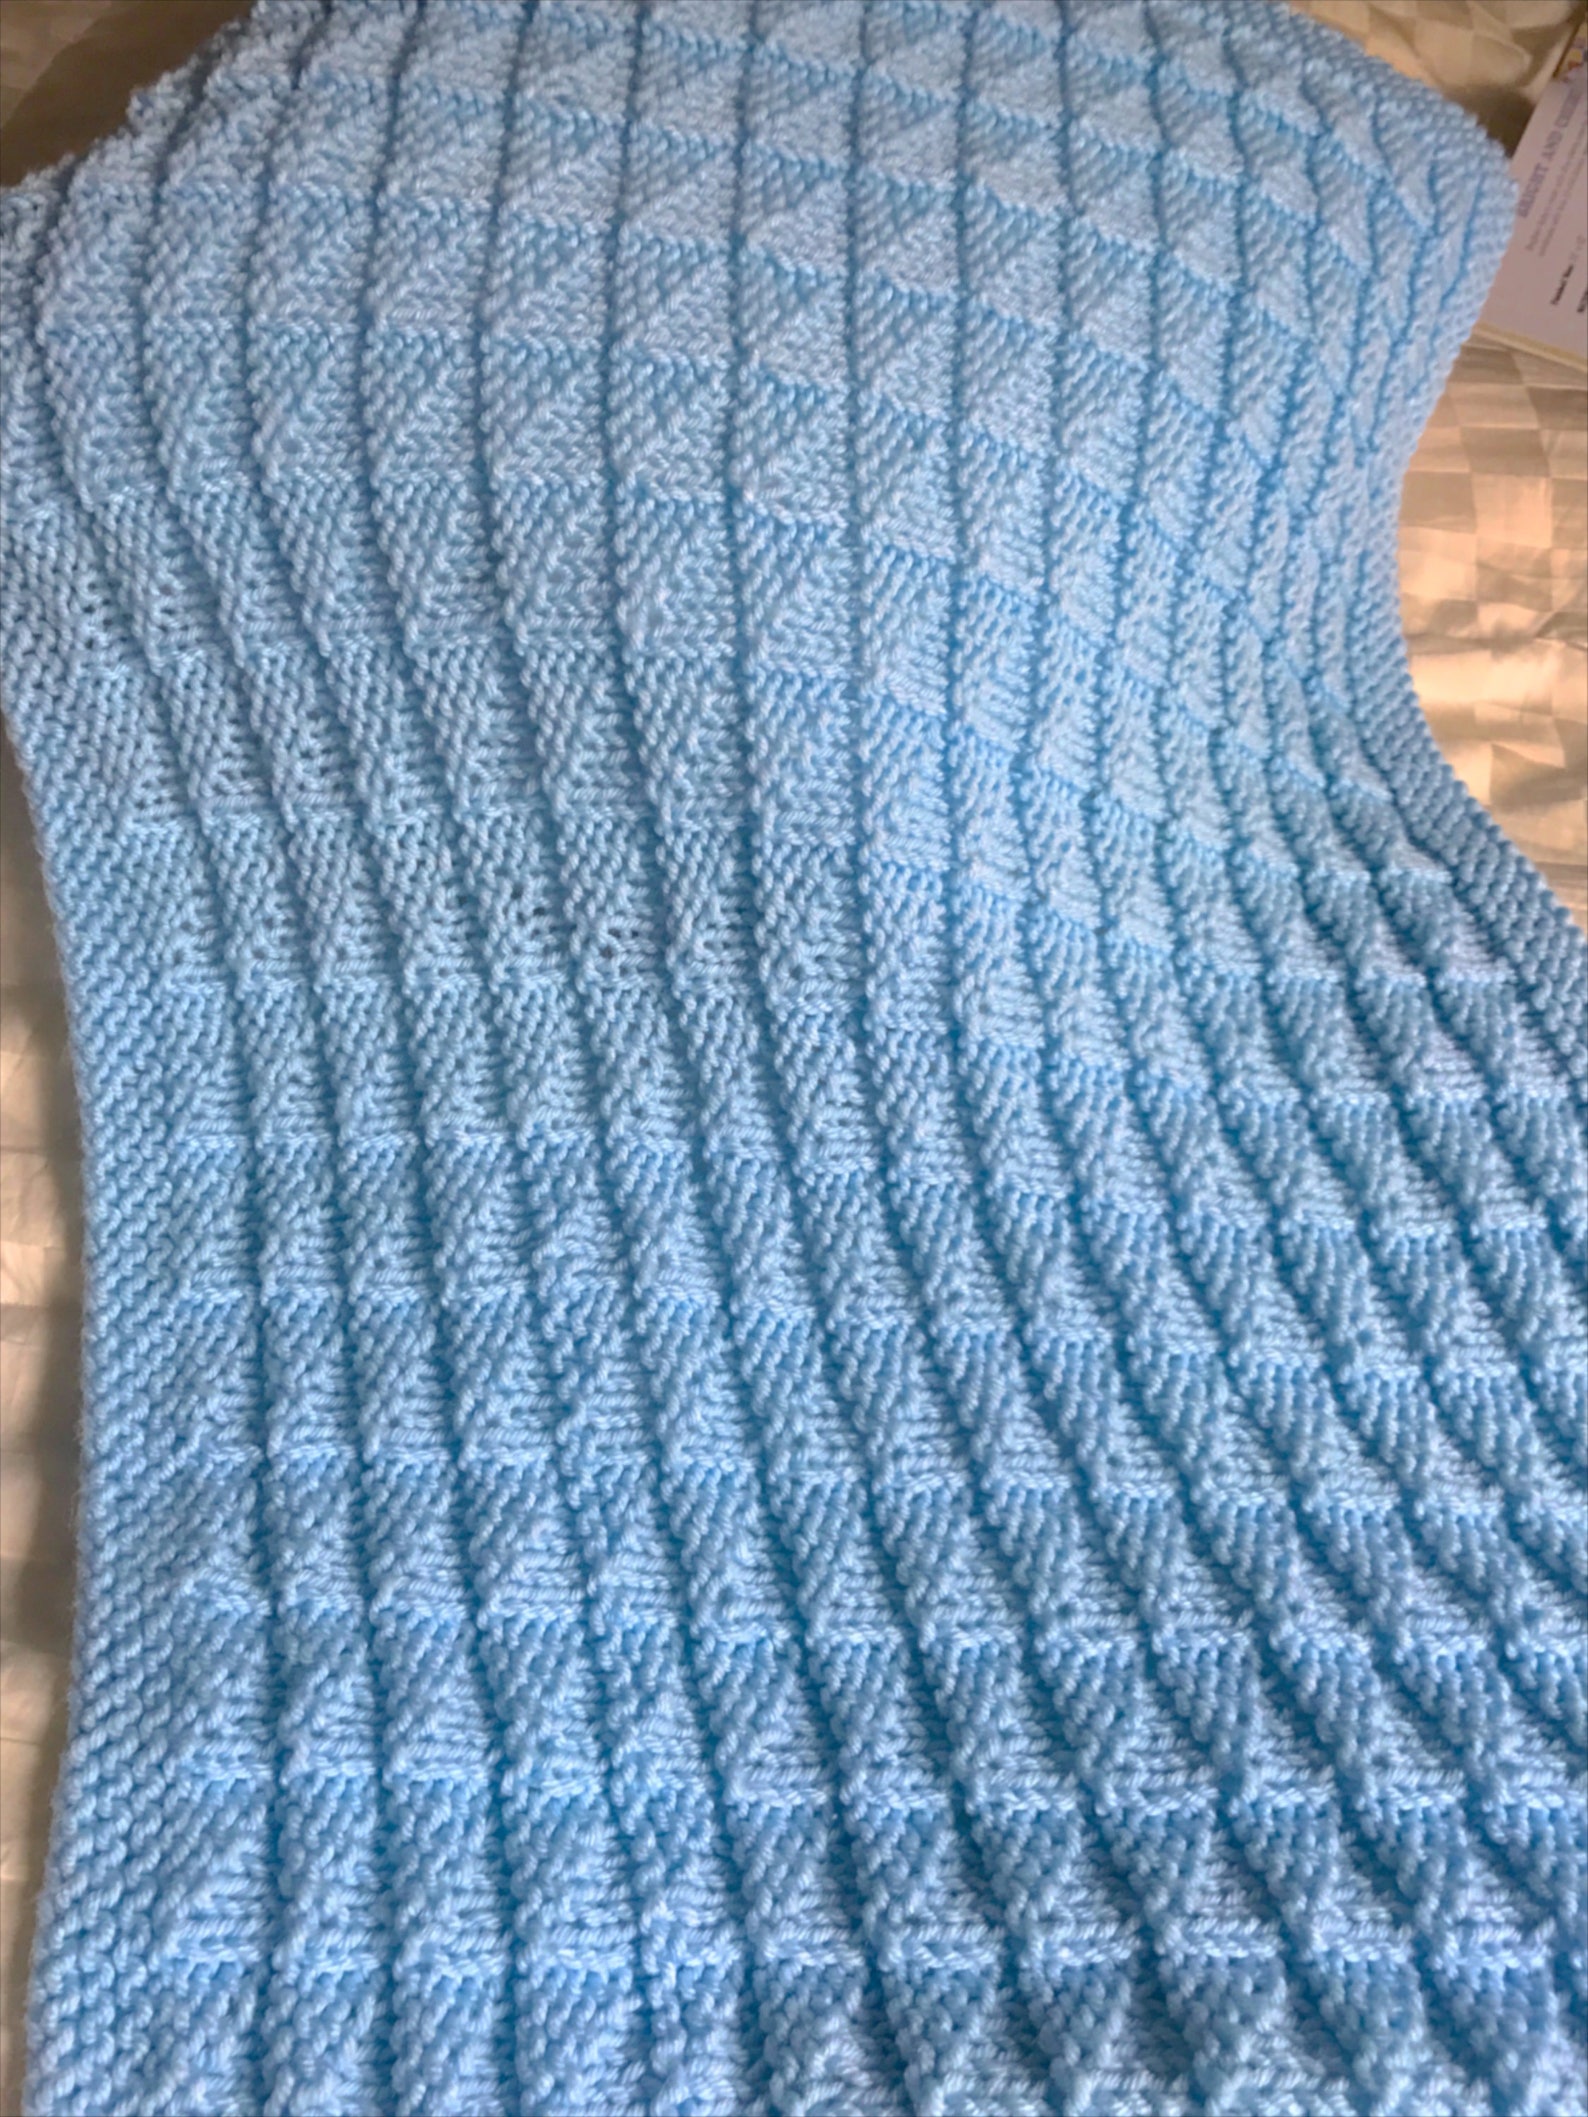 Puffy Pockets Baby Blanket Knit Pattern Easy Knitting | Etsy